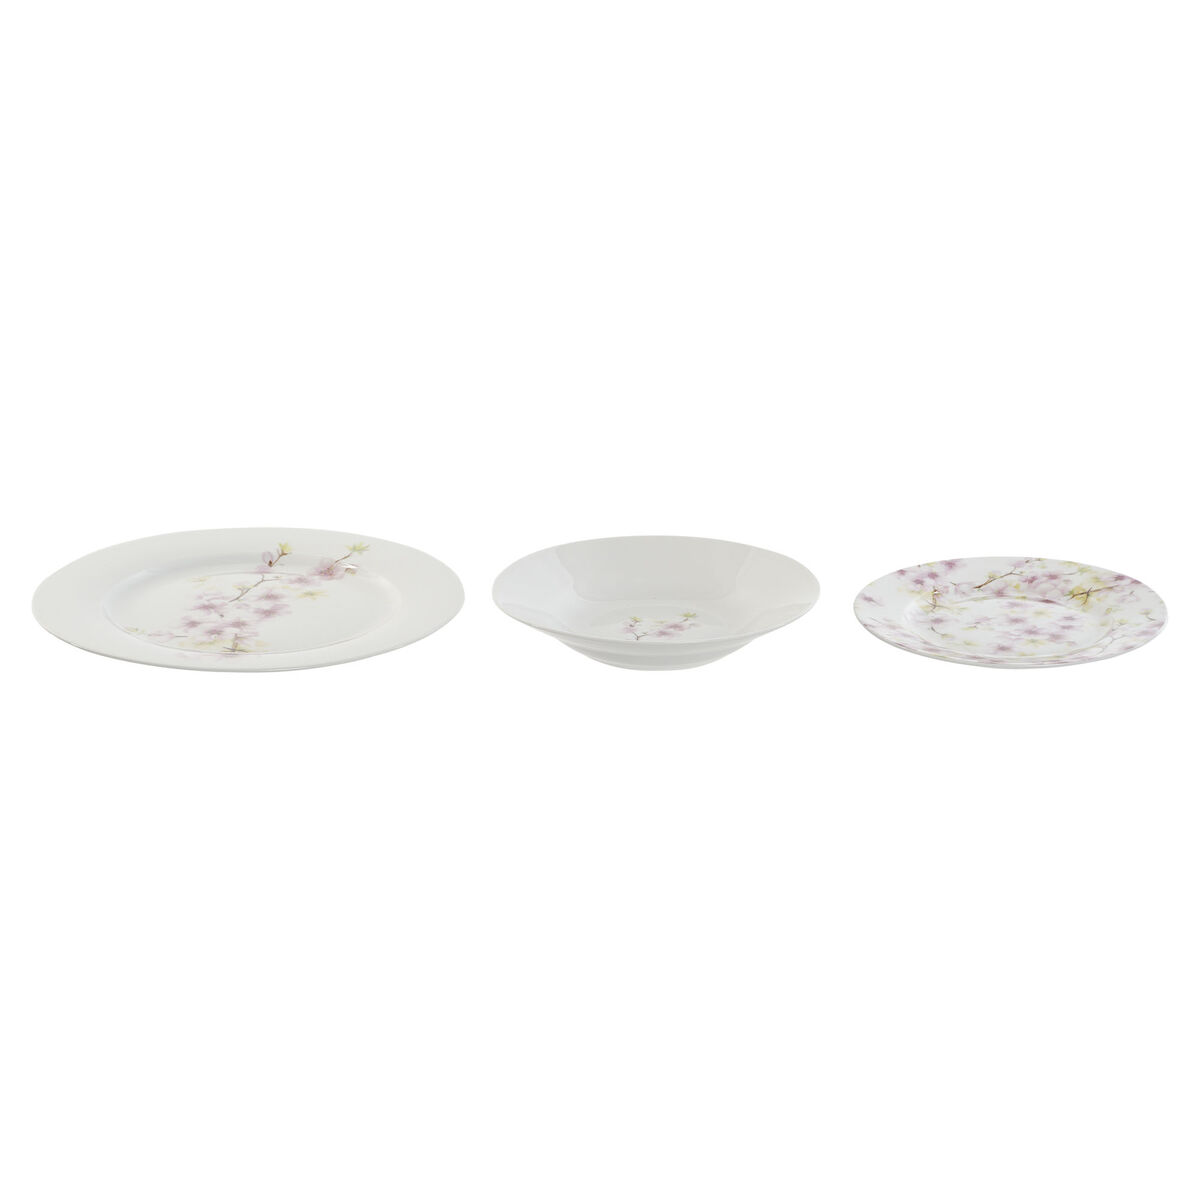 Service de Vaisselle Home ESPRIT Blanc Vert Rose Porcelaine 18 Pièces 27 x 27 x 2 cm